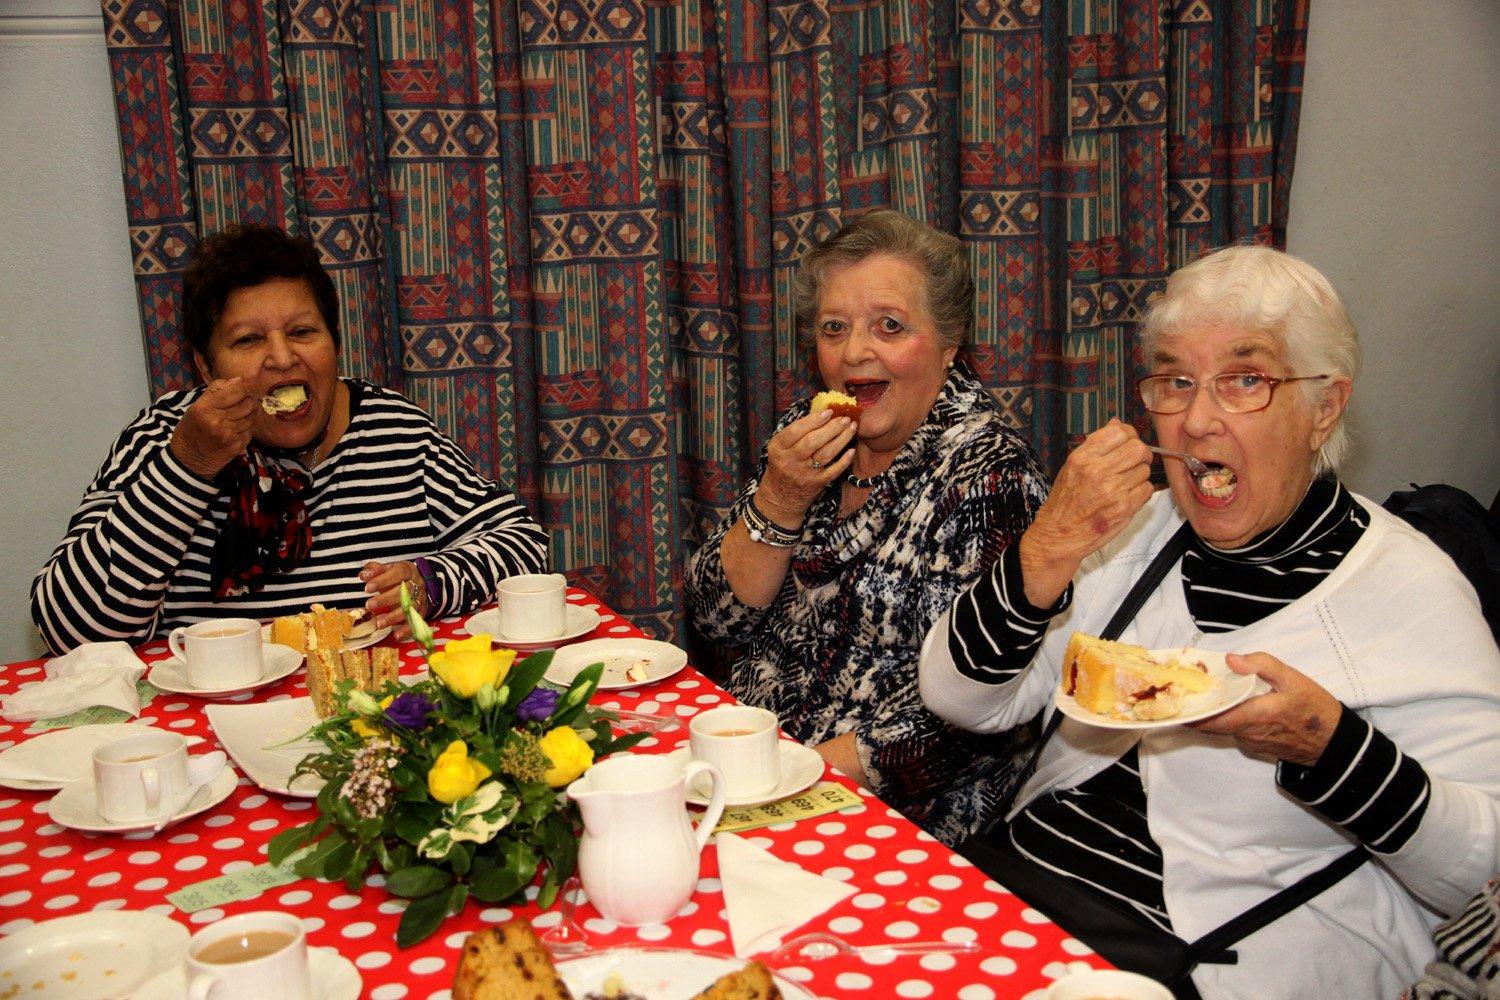 Tasty treats at Uckfield Rotary Seniors' Party